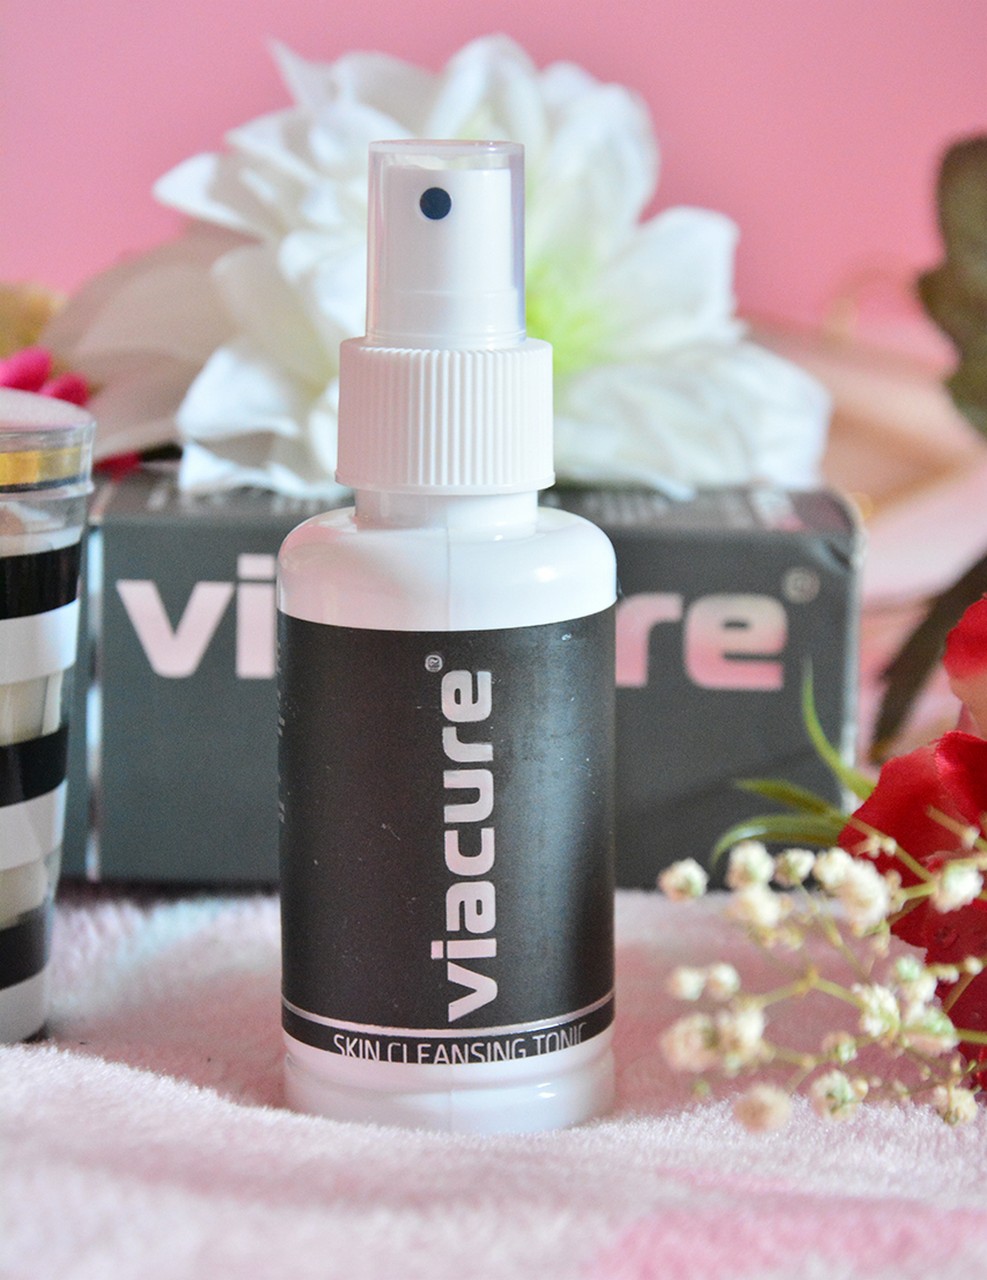 Viacure Skin Cleansing Tonic | Tonik Blog